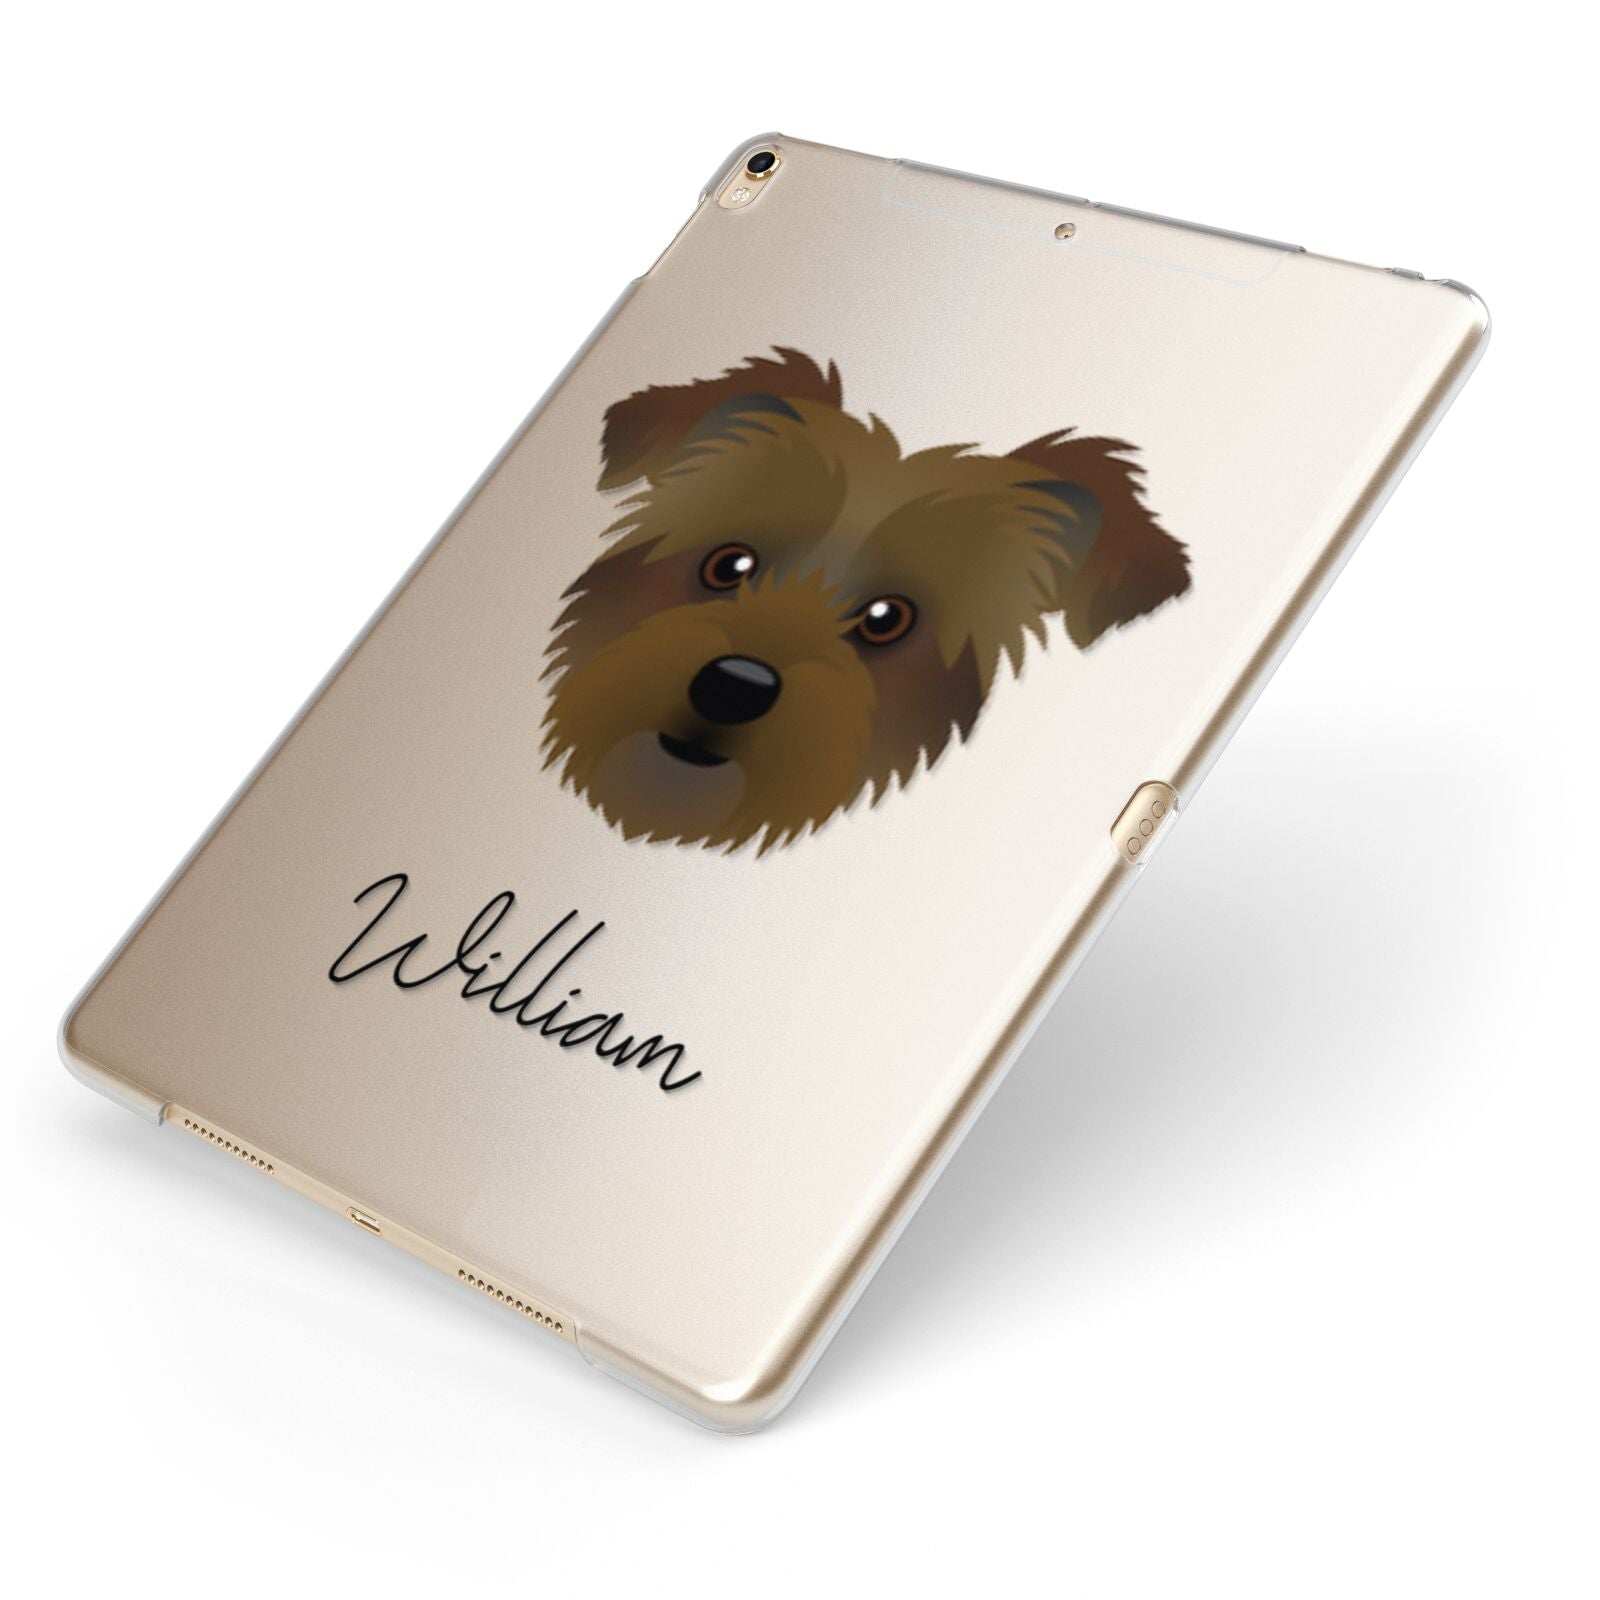 Jacktzu Personalised Apple iPad Case on Gold iPad Side View